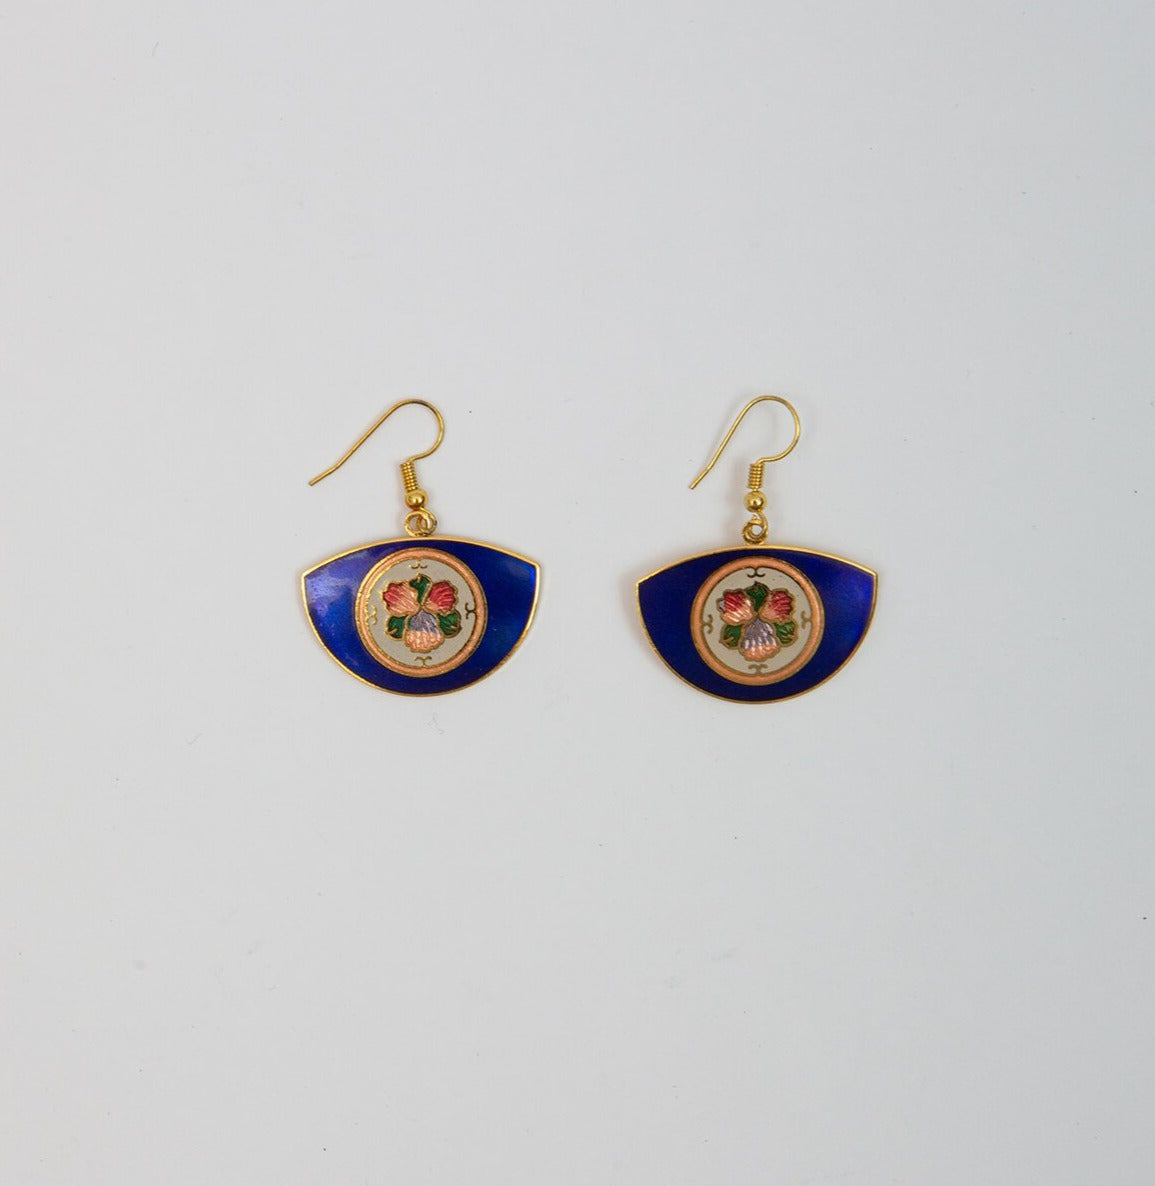 Cloisonné Fan Earrings in blue colorway